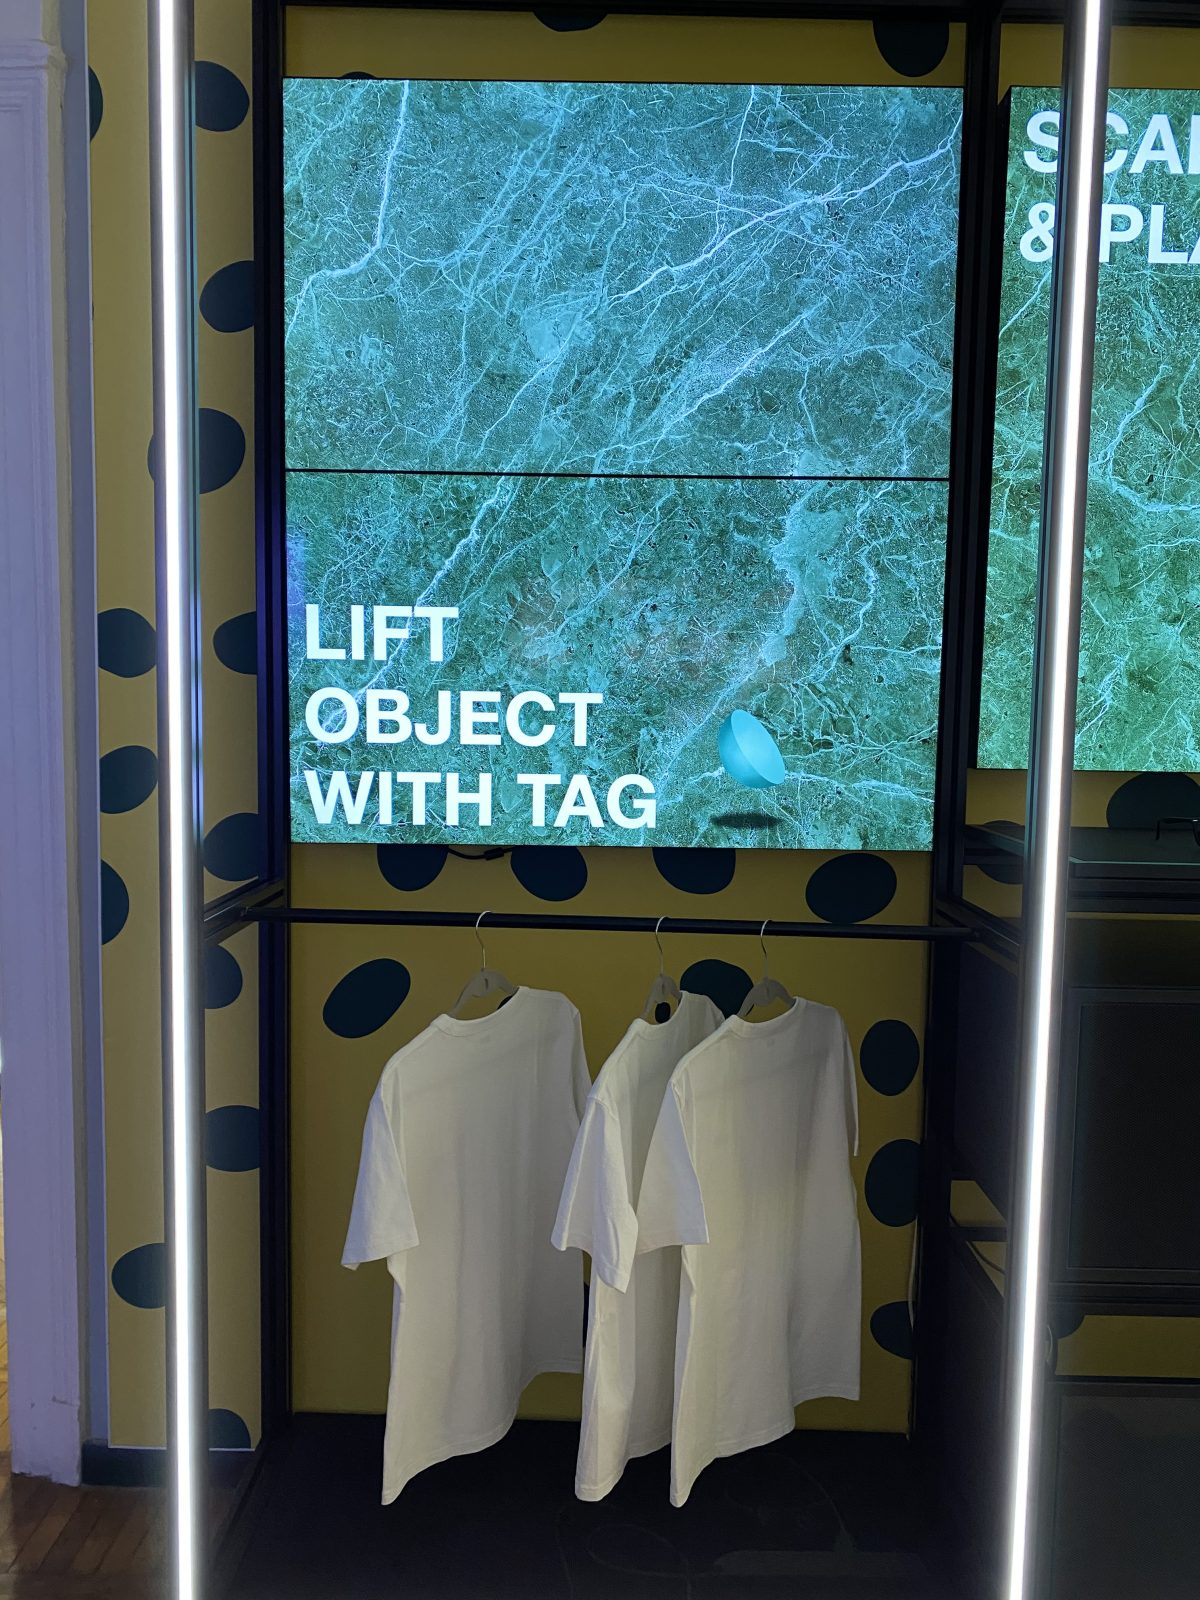 schermo a led con magliette sottostanti, parte della libreria digitale realizzata da Corepixx, azienda del Gruppo ETT, per la sede milanese di Viale Abruzzi